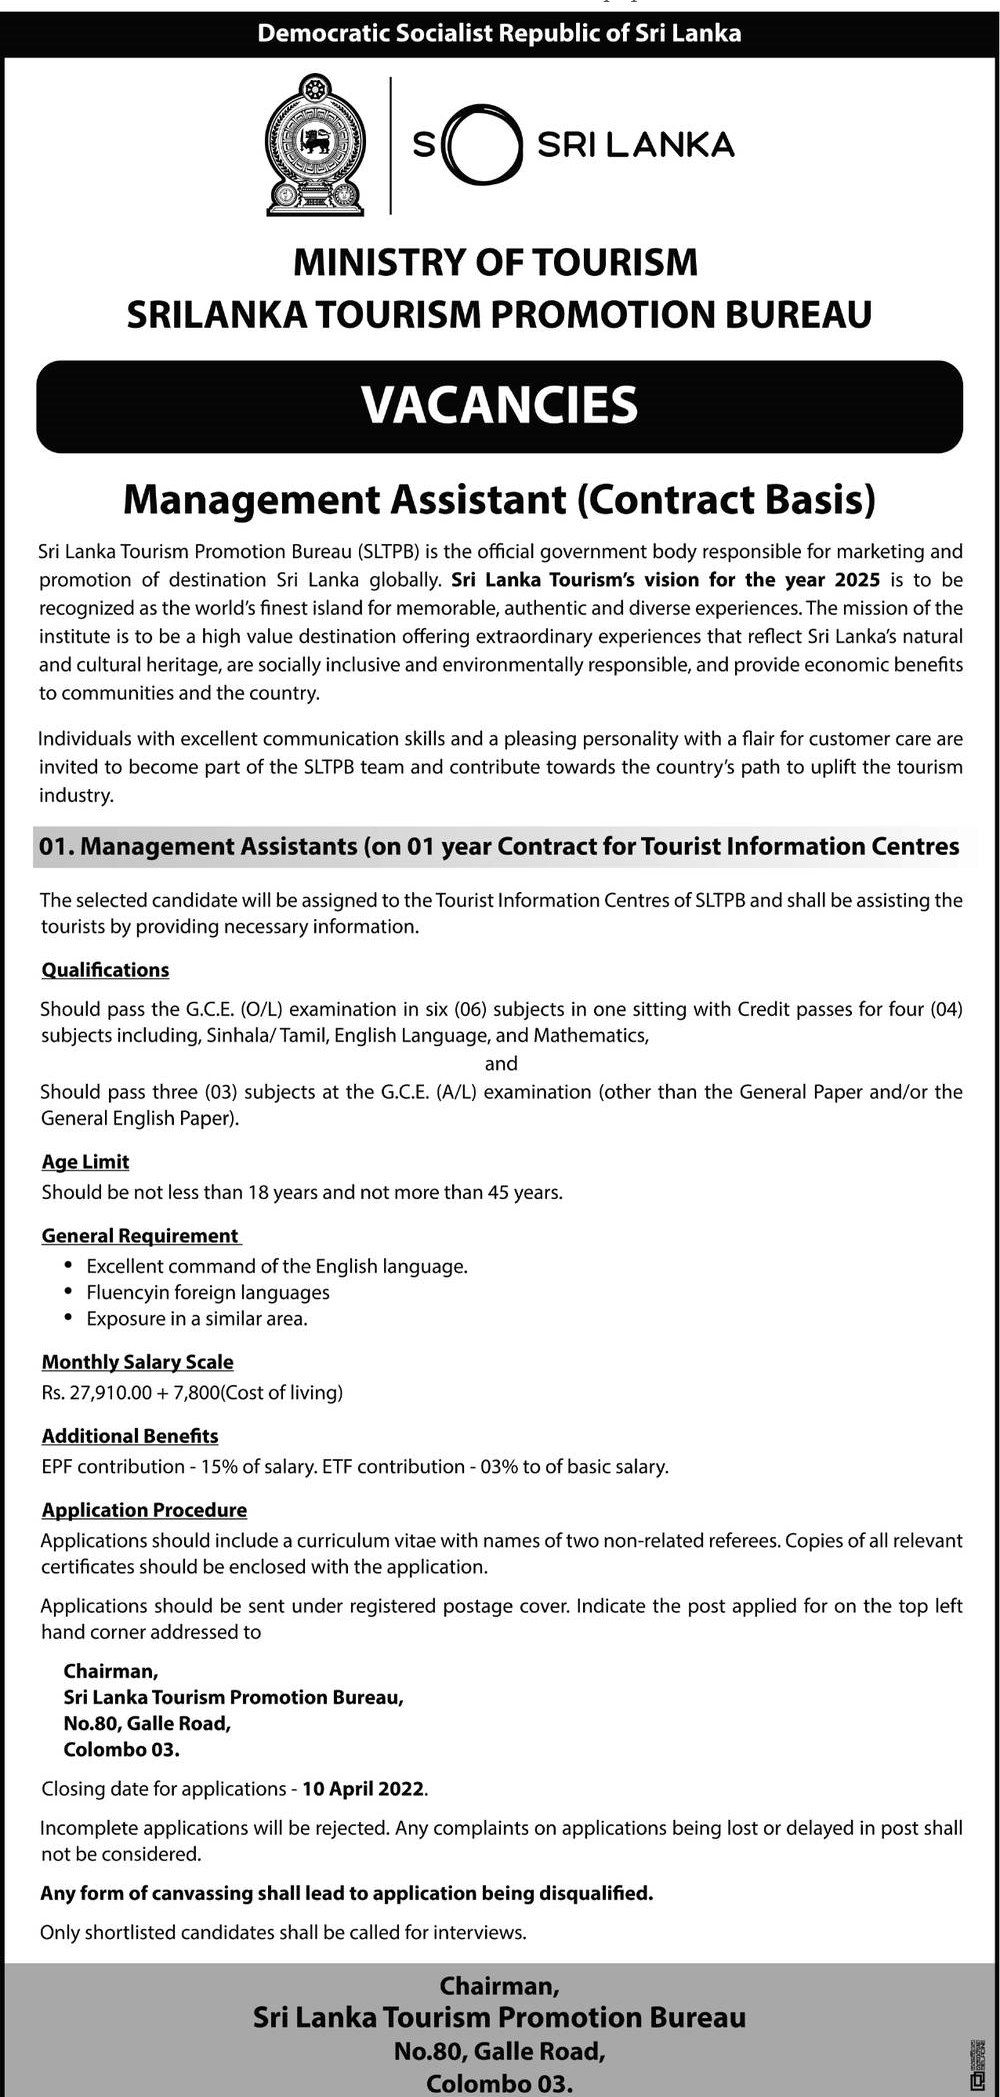 Sri Lanka Tourism Promotion Bureau Vacancies 2022 for Management Assistant